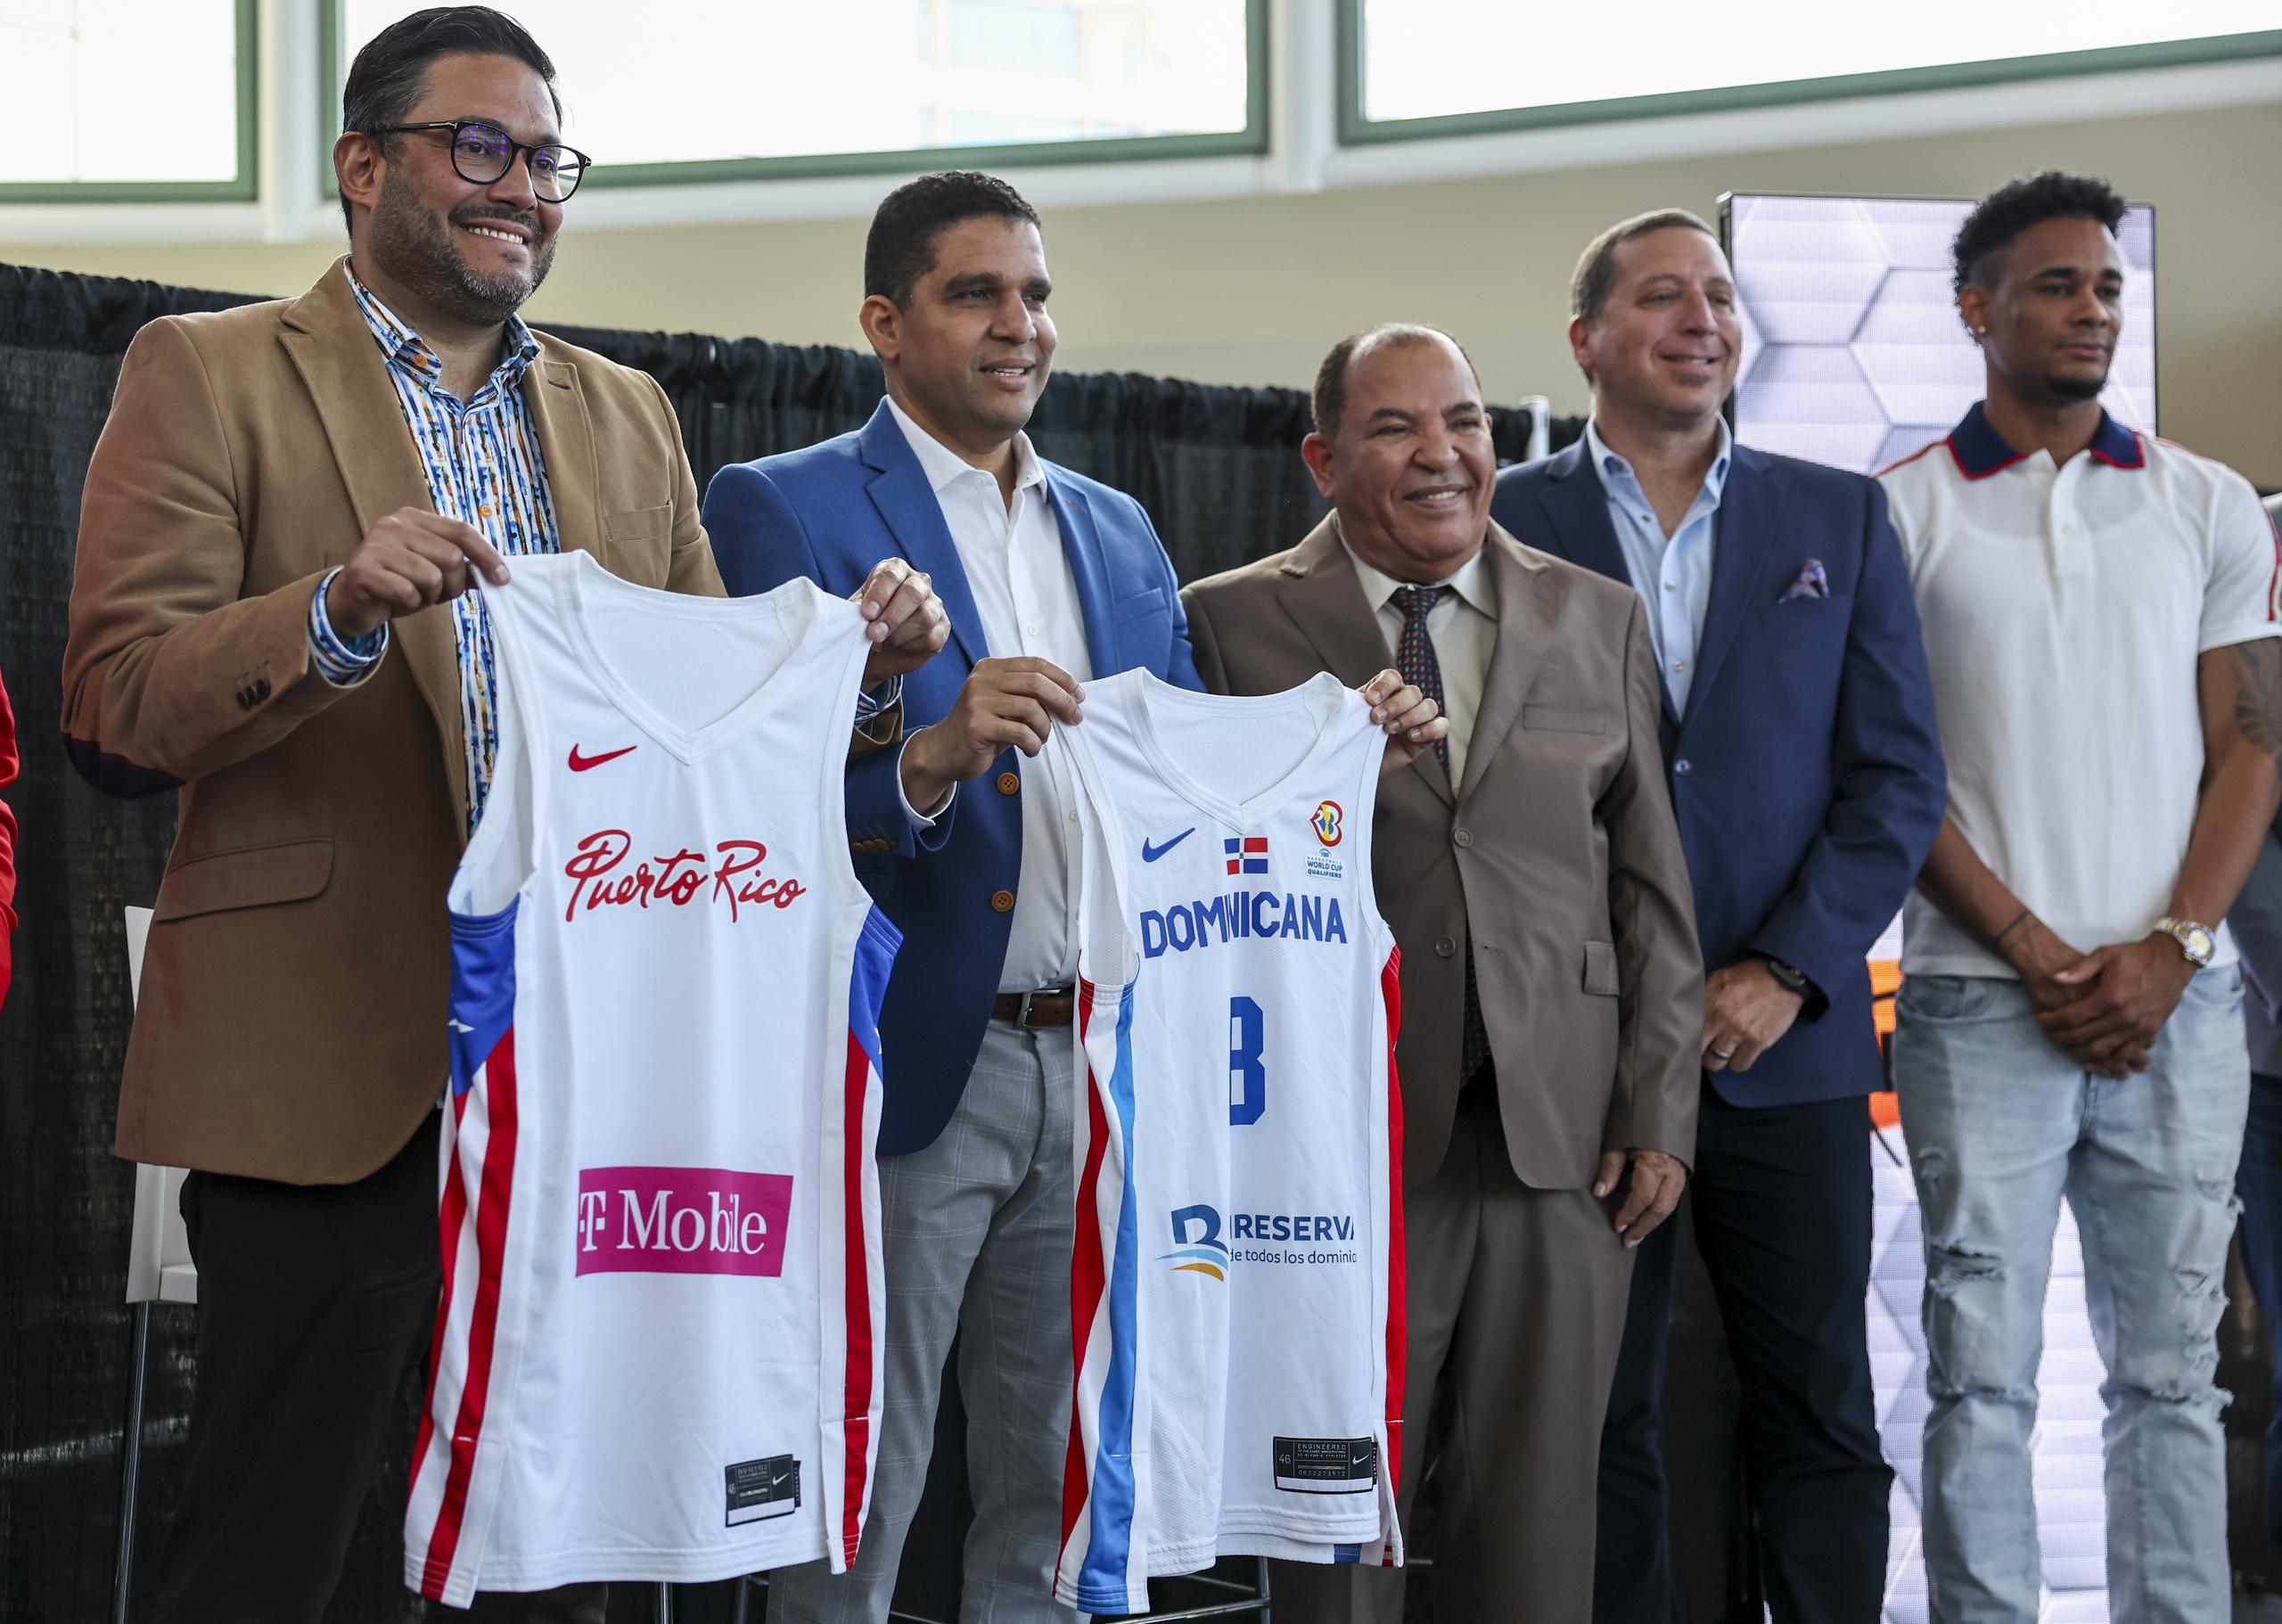 Directivos de los seleccionados de Puerto Rico y la República Dominicana presenta detalles del juego de fogueo que jugarán ambos países en el Coliseo de Puerto Rico el 4 de agosto.